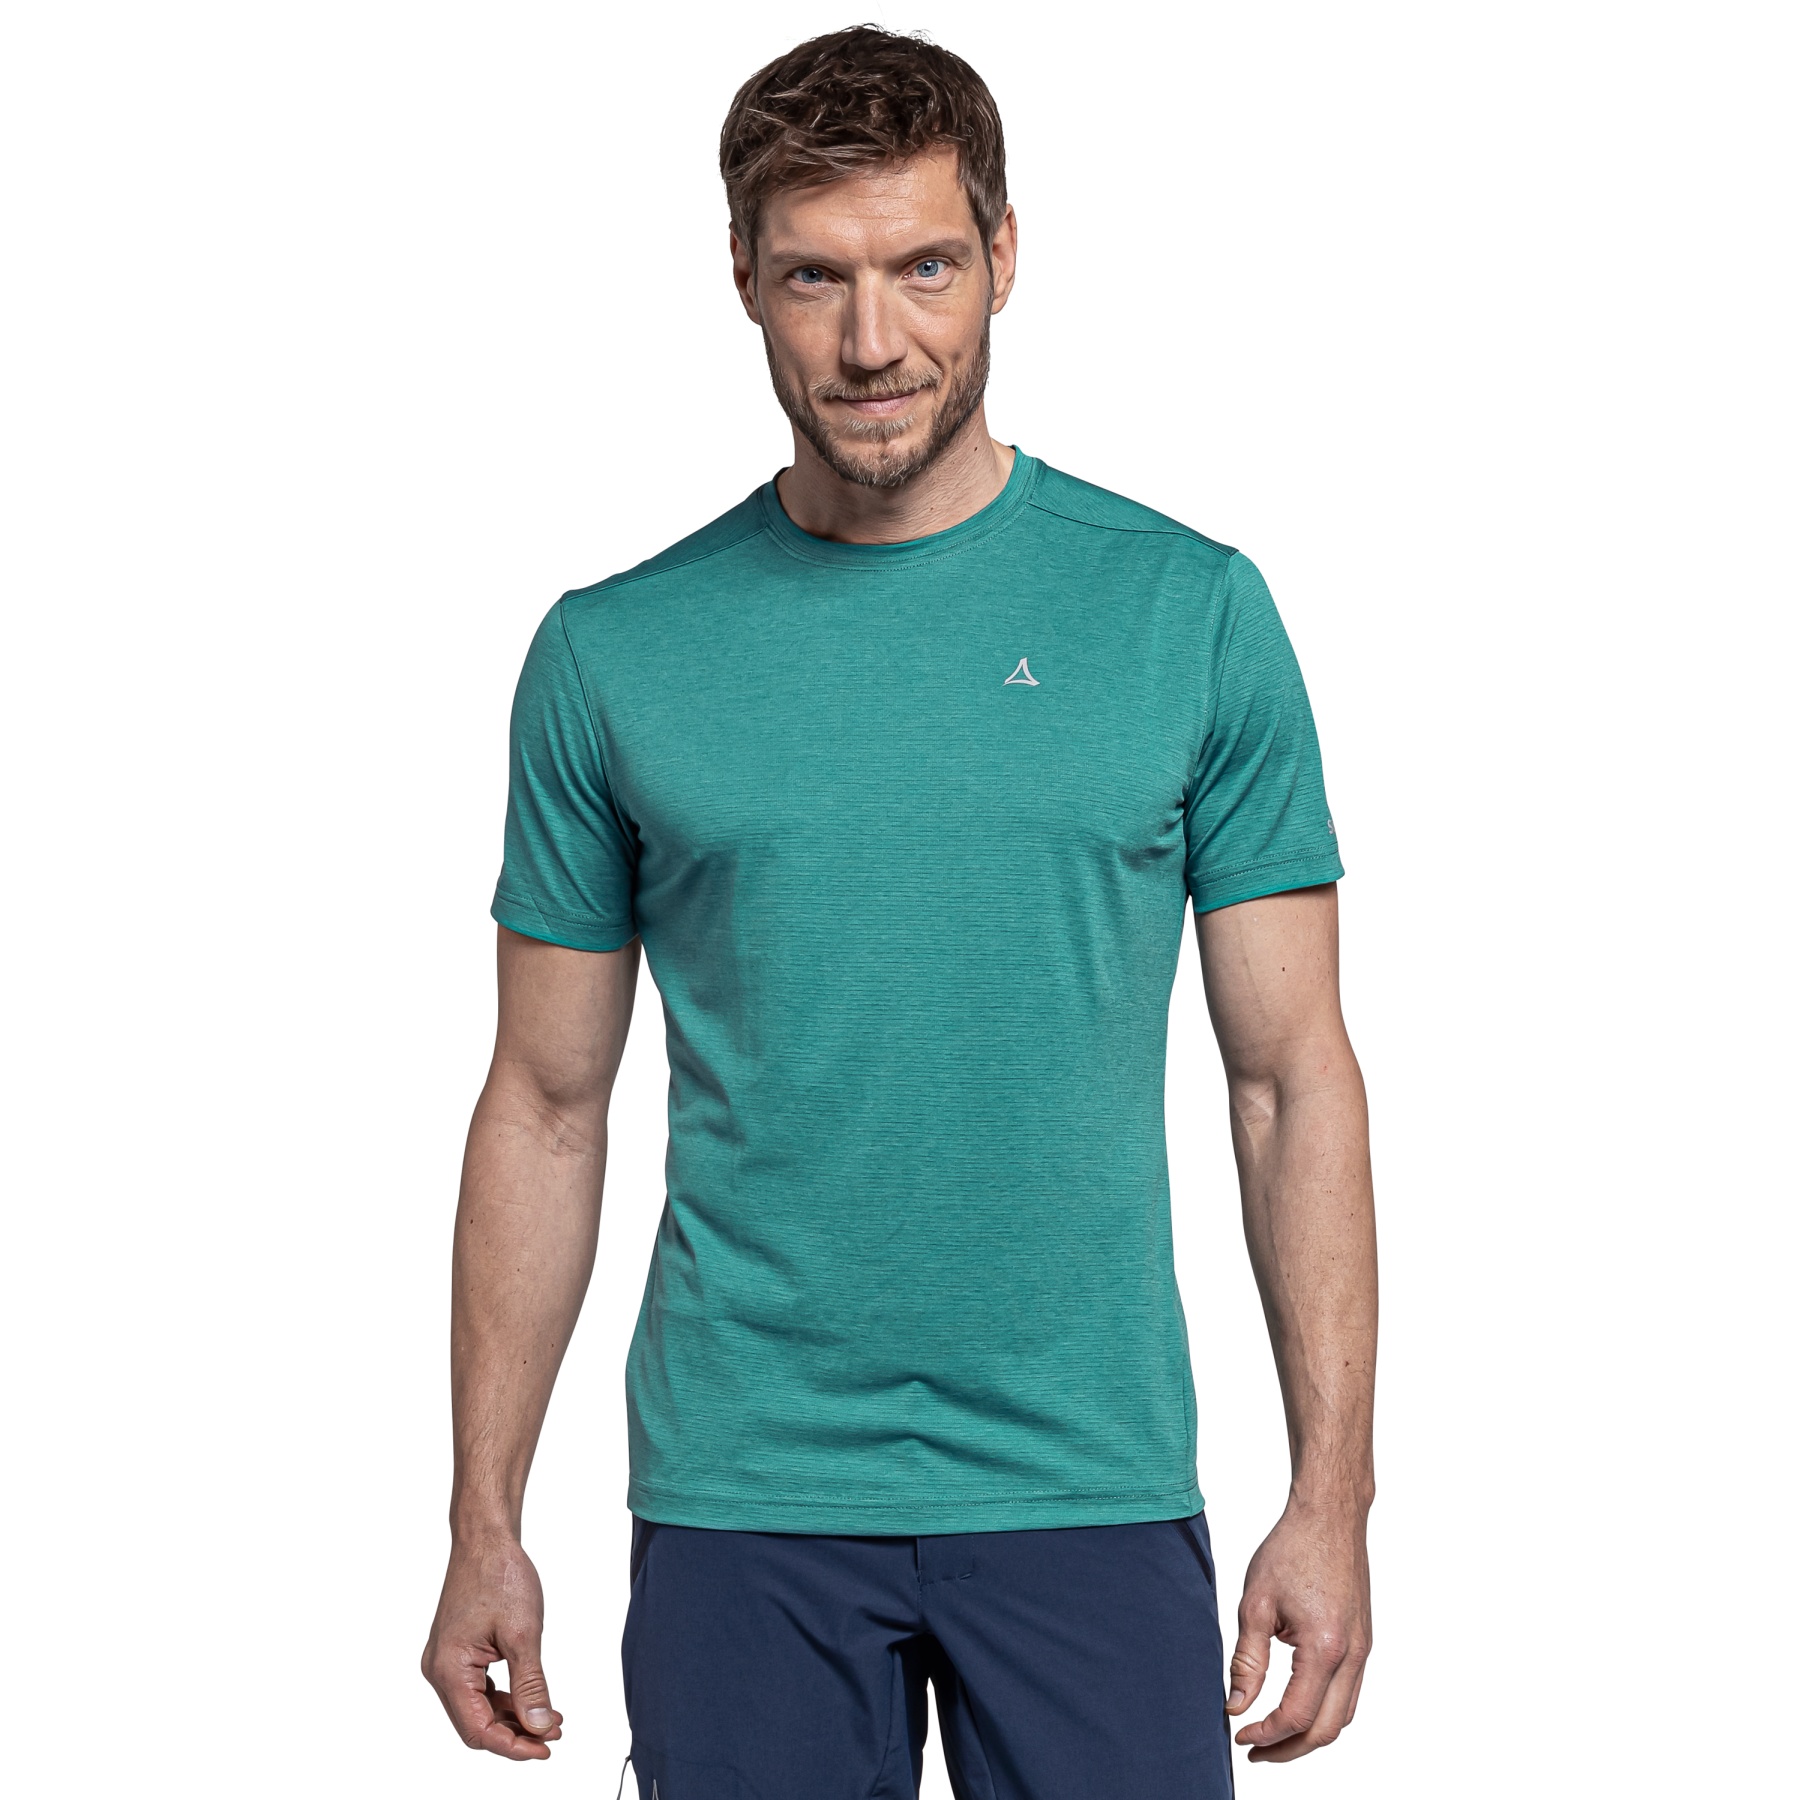 Produktbild von Schöffel Tauron CIRC T-Shirt Herren - teal 6755